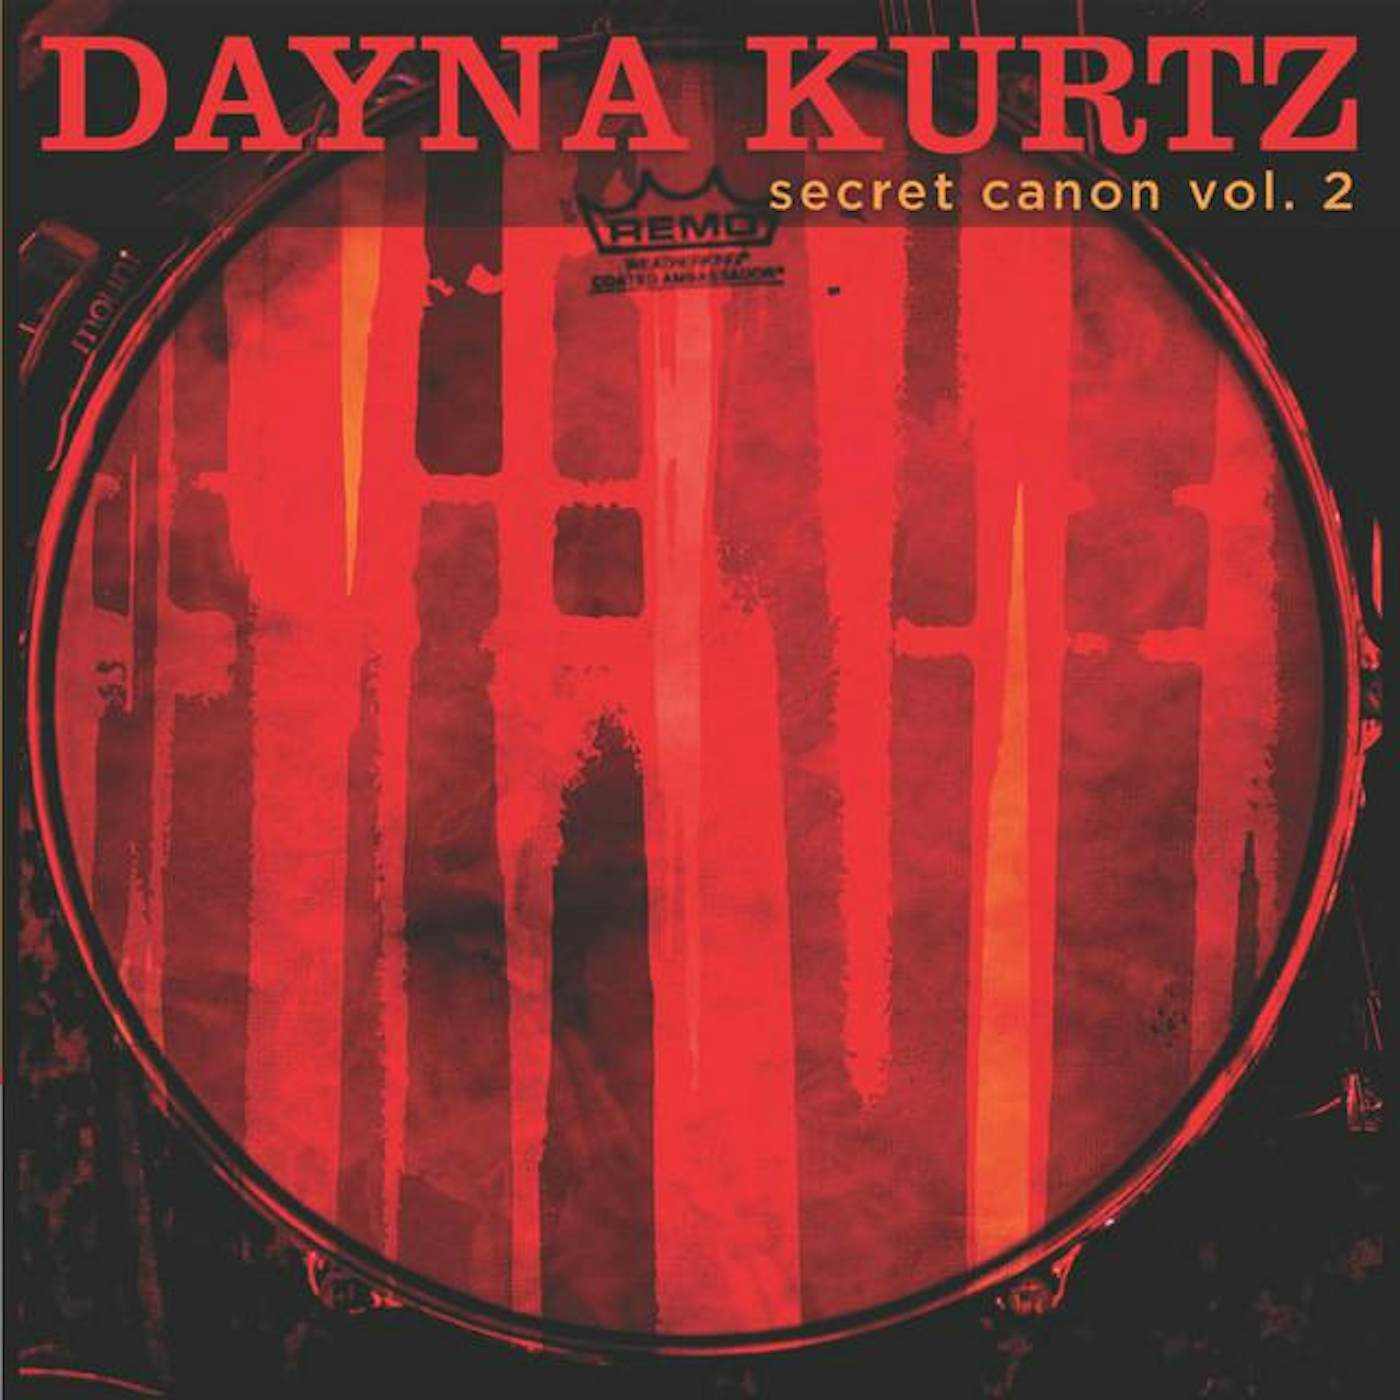 Dayna Kurtz